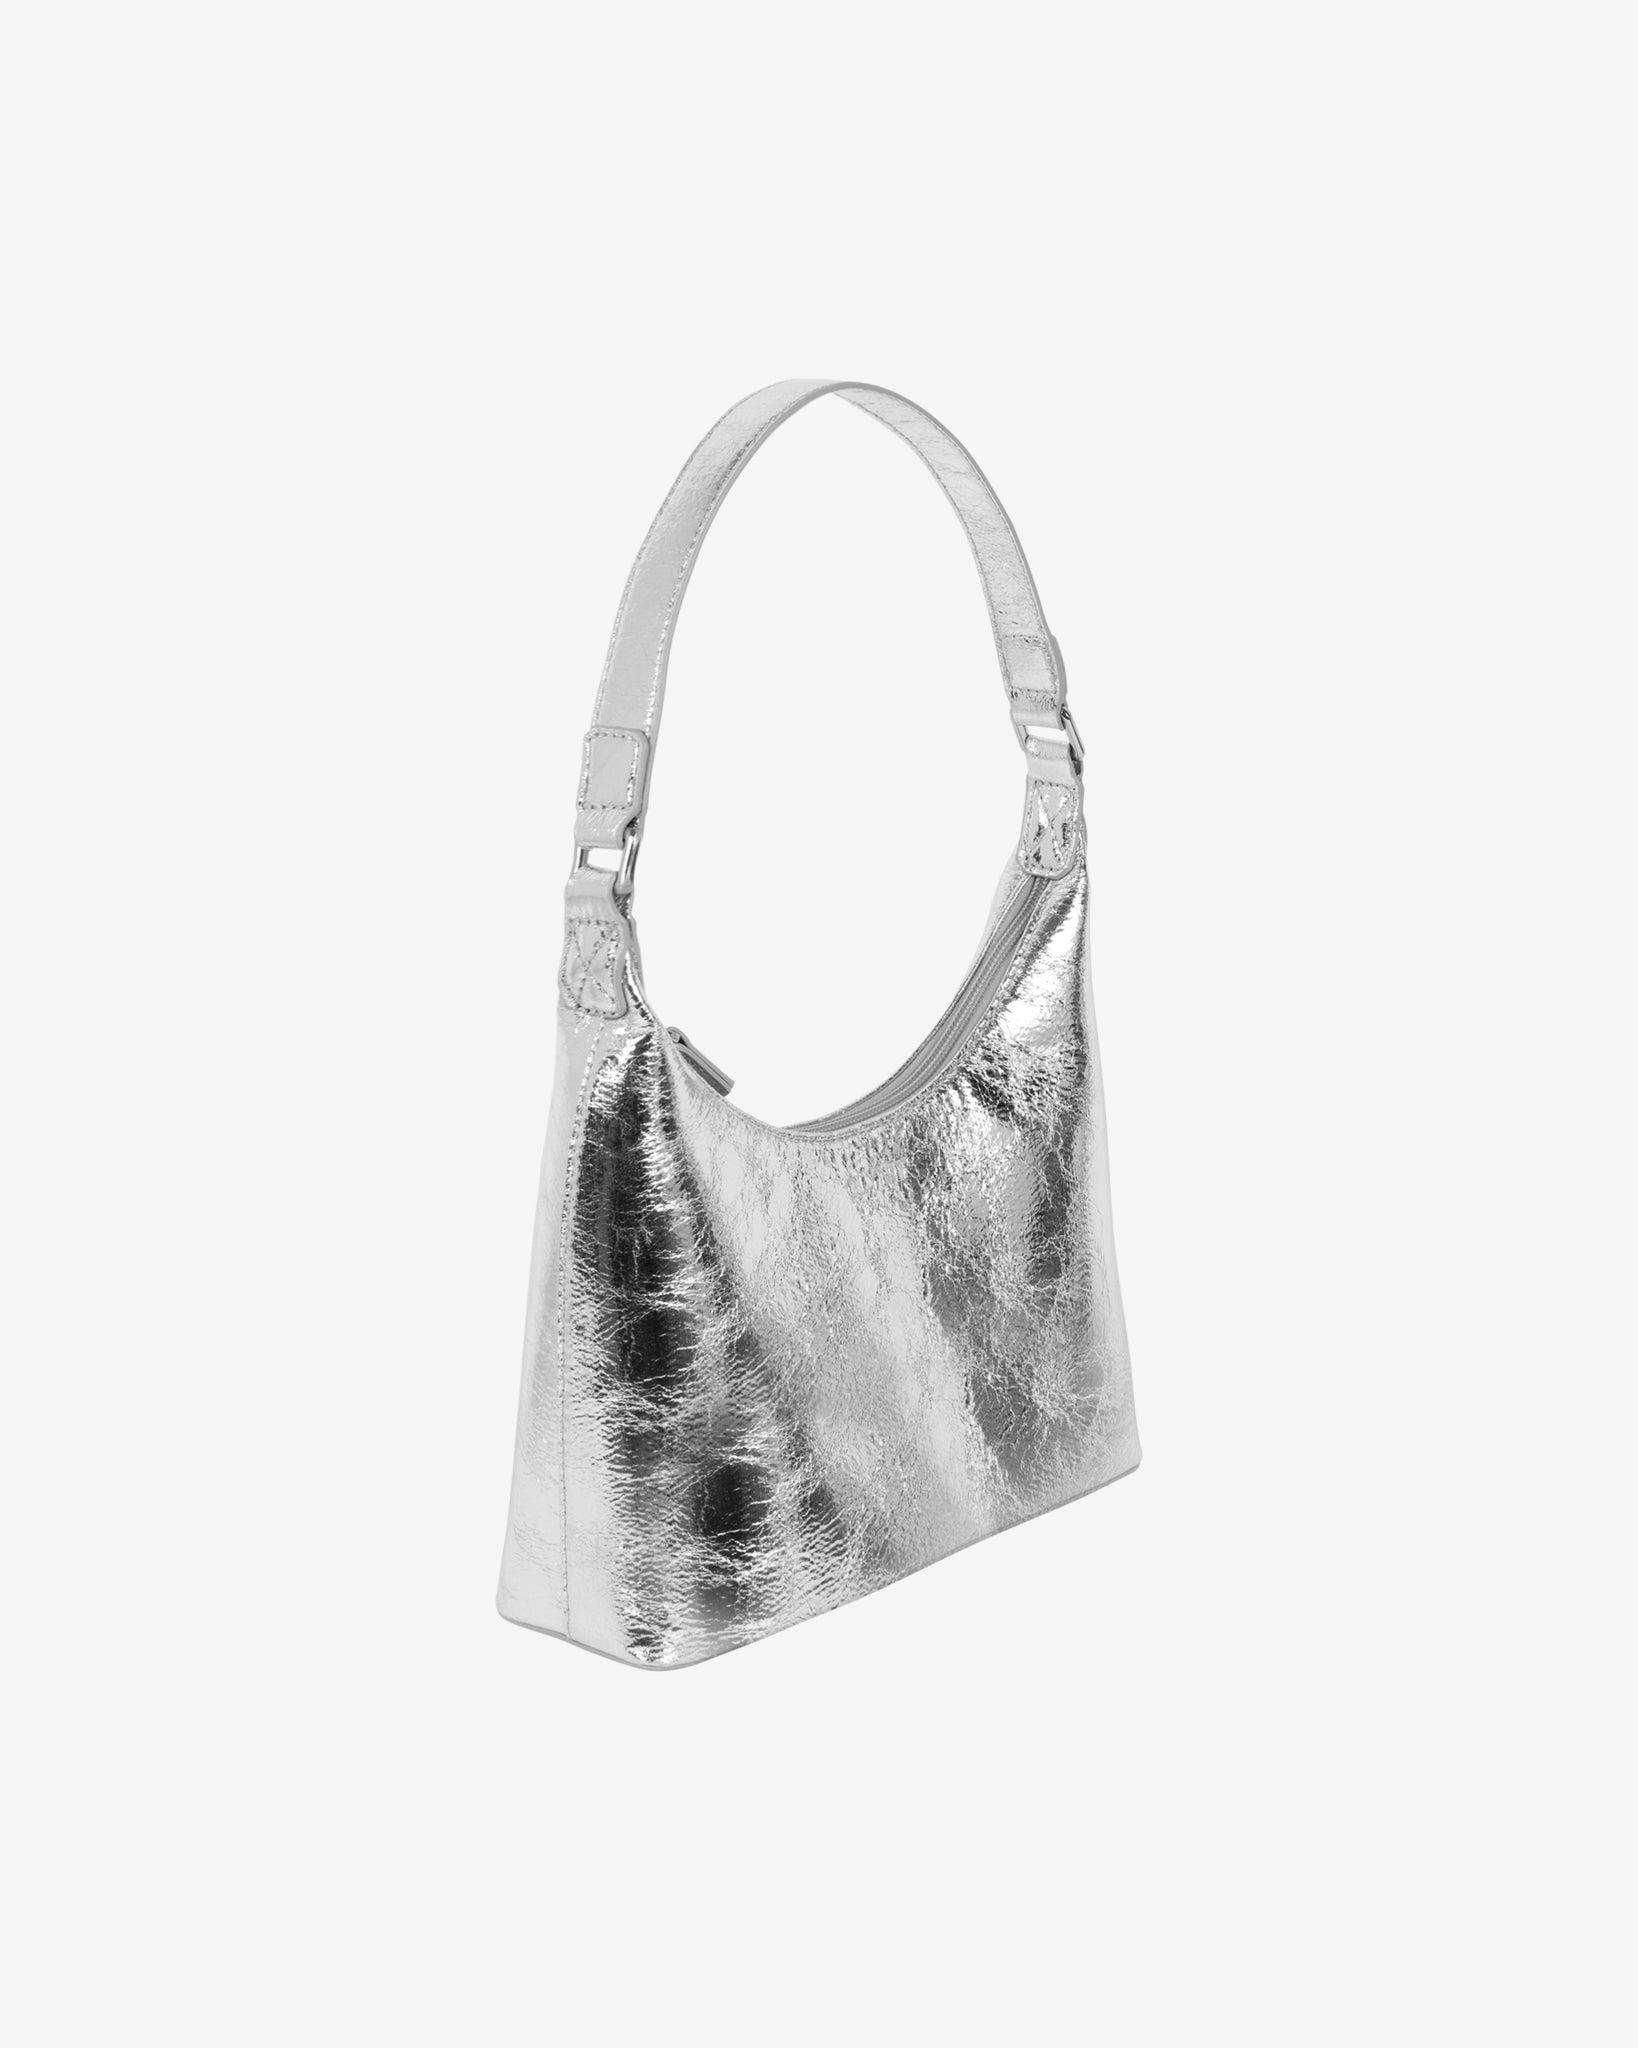 Molly Bag - Cracked Silver